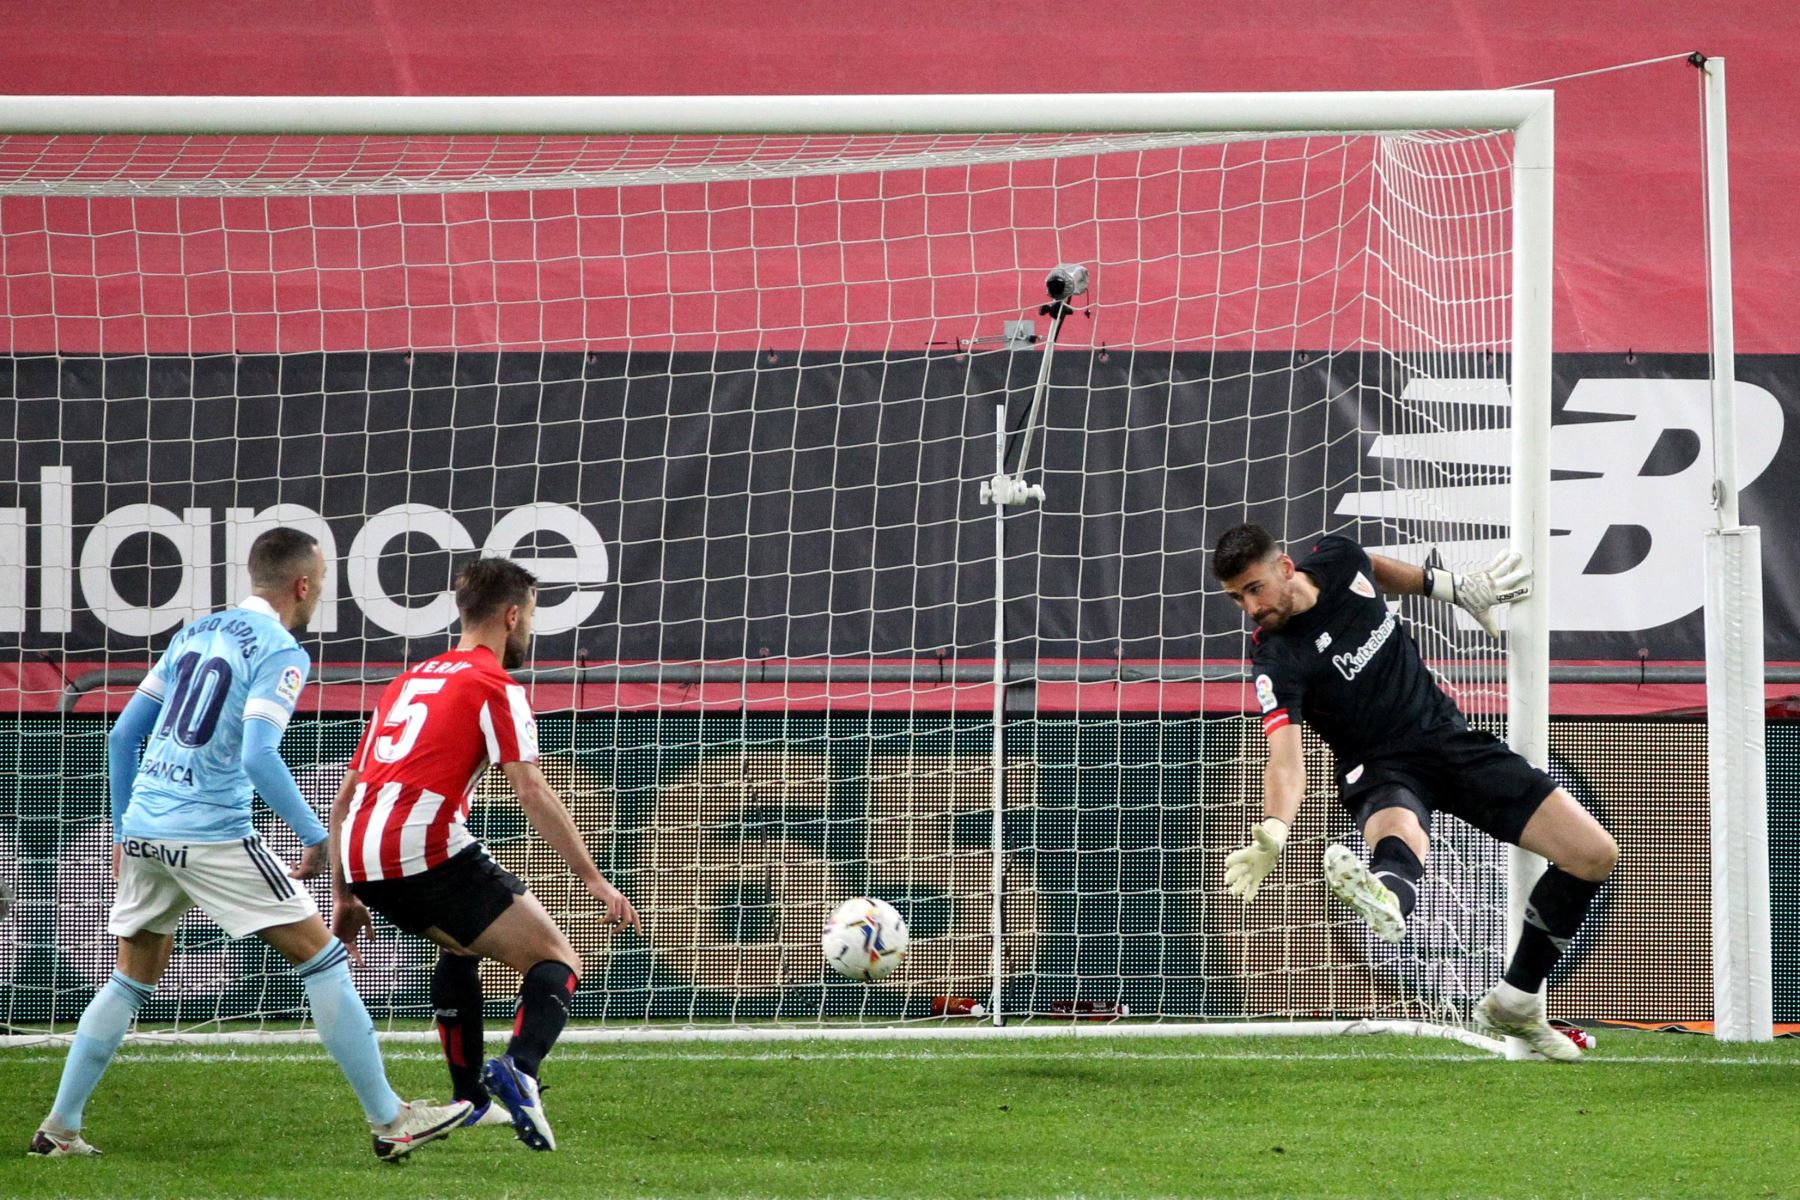 El defensa del Celta de Vigo Hugo Mallo marca gol ante el portero del Athletic de Bilbao  en el partido de la duodécima jornada de La Liga Santander.
Foto: EFE